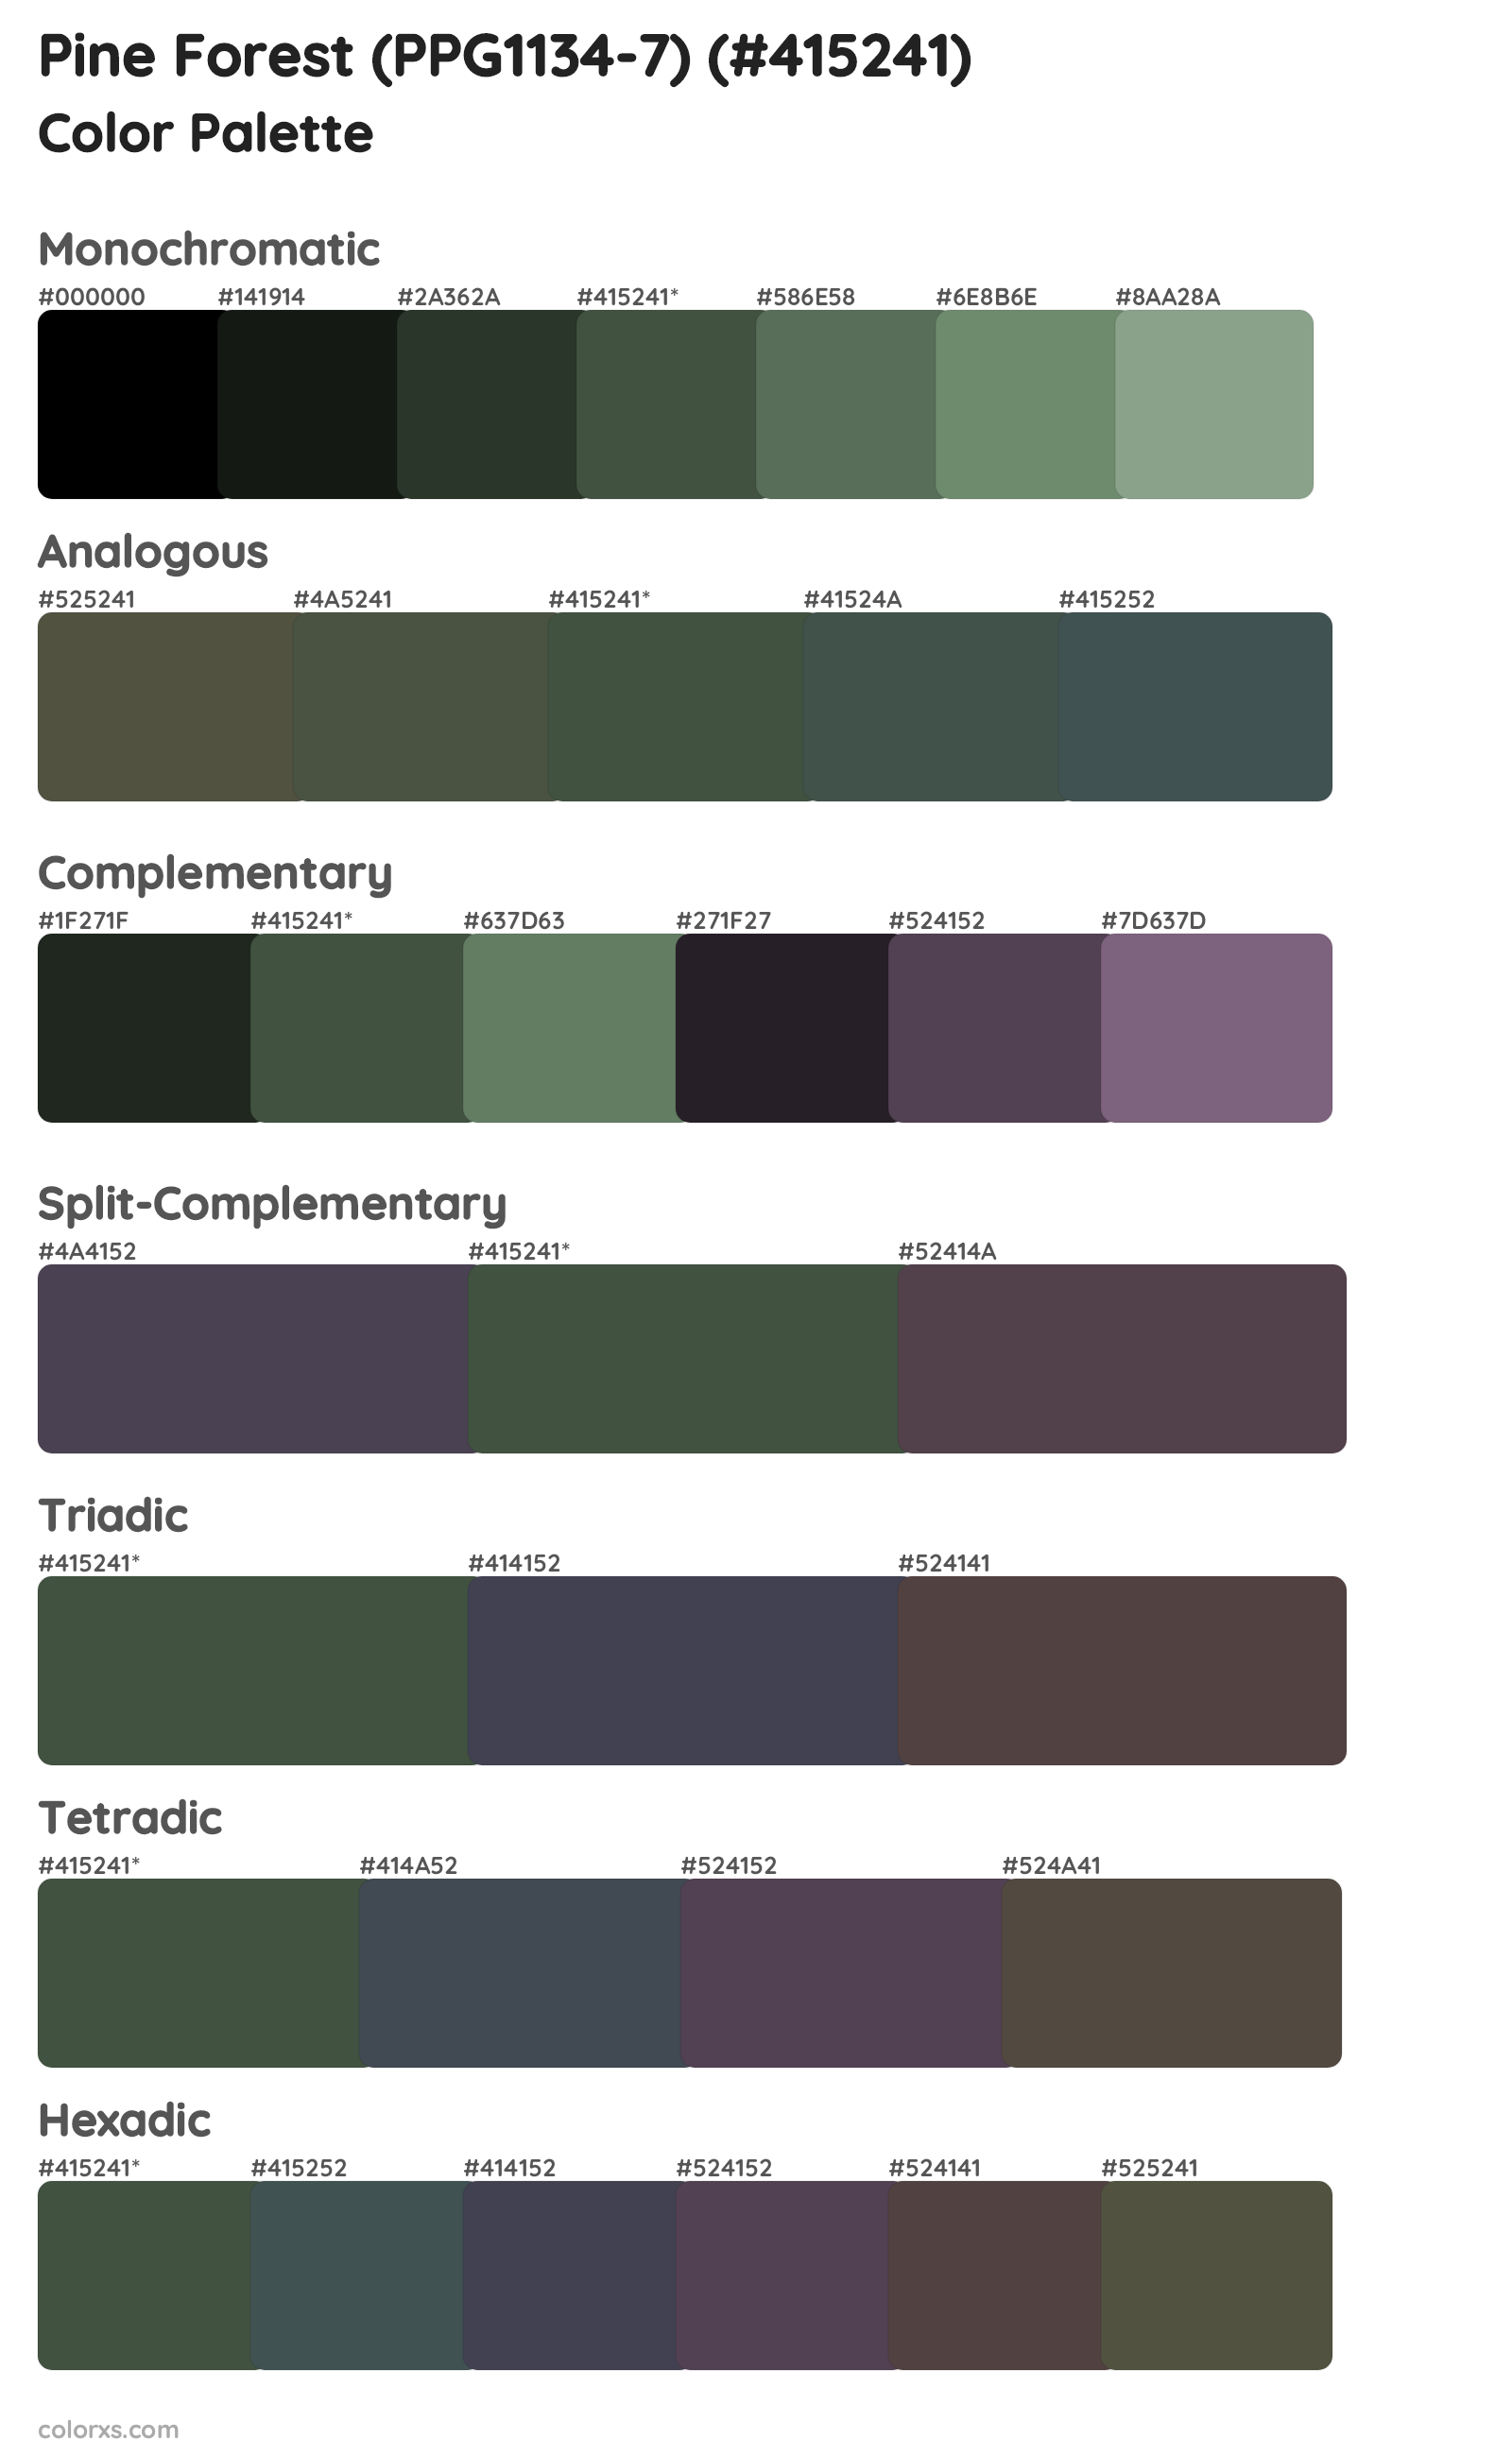 Pine Forest (PPG1134-7) Color Scheme Palettes